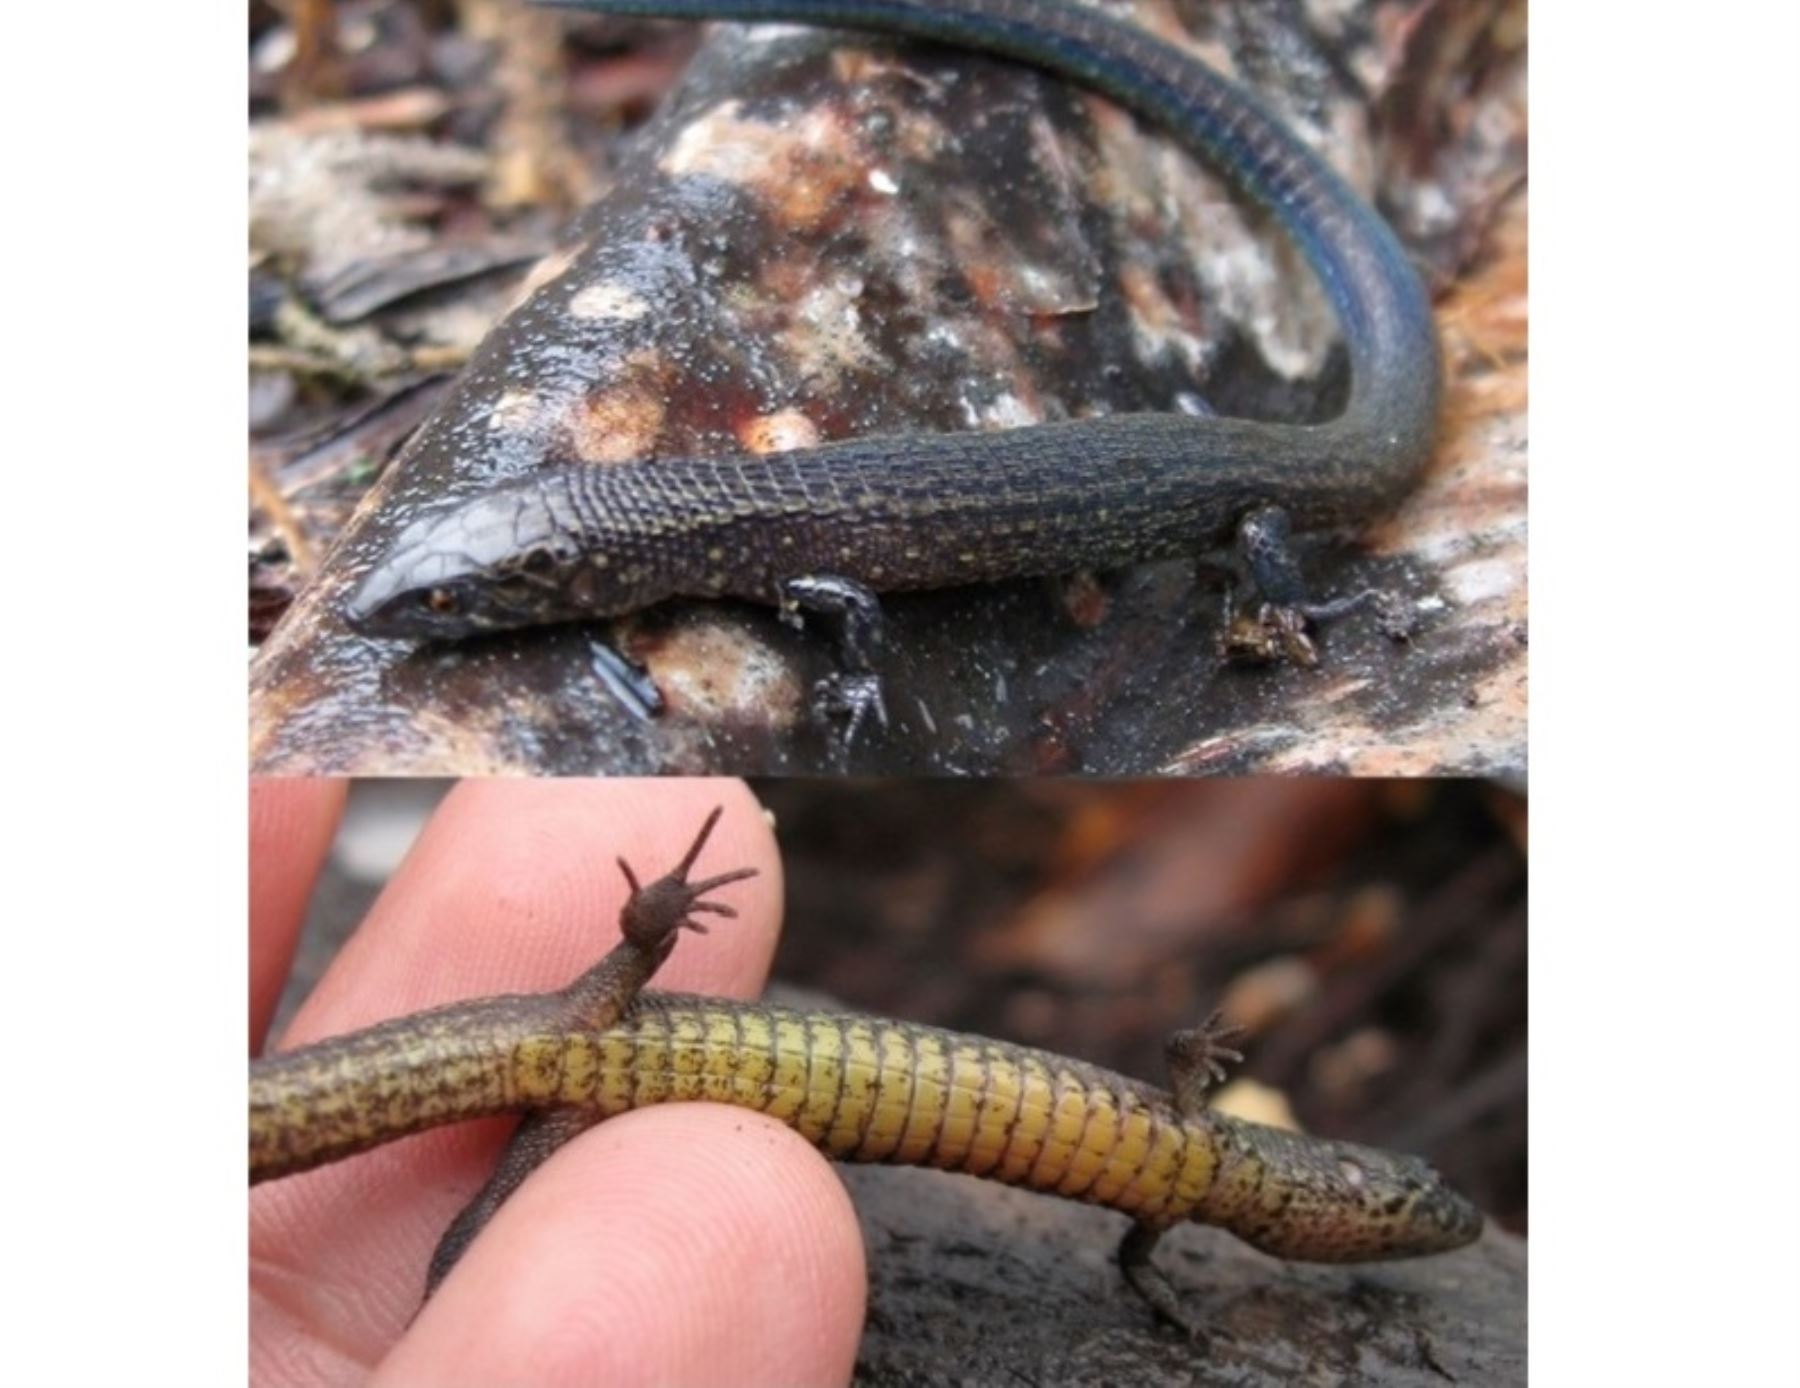 Científicos descubren dos nuevas especies de lagartija en interior del Santuario Histórico Machu Picchu, en Cusco, informó Sernanp. ANDINA/Difusión